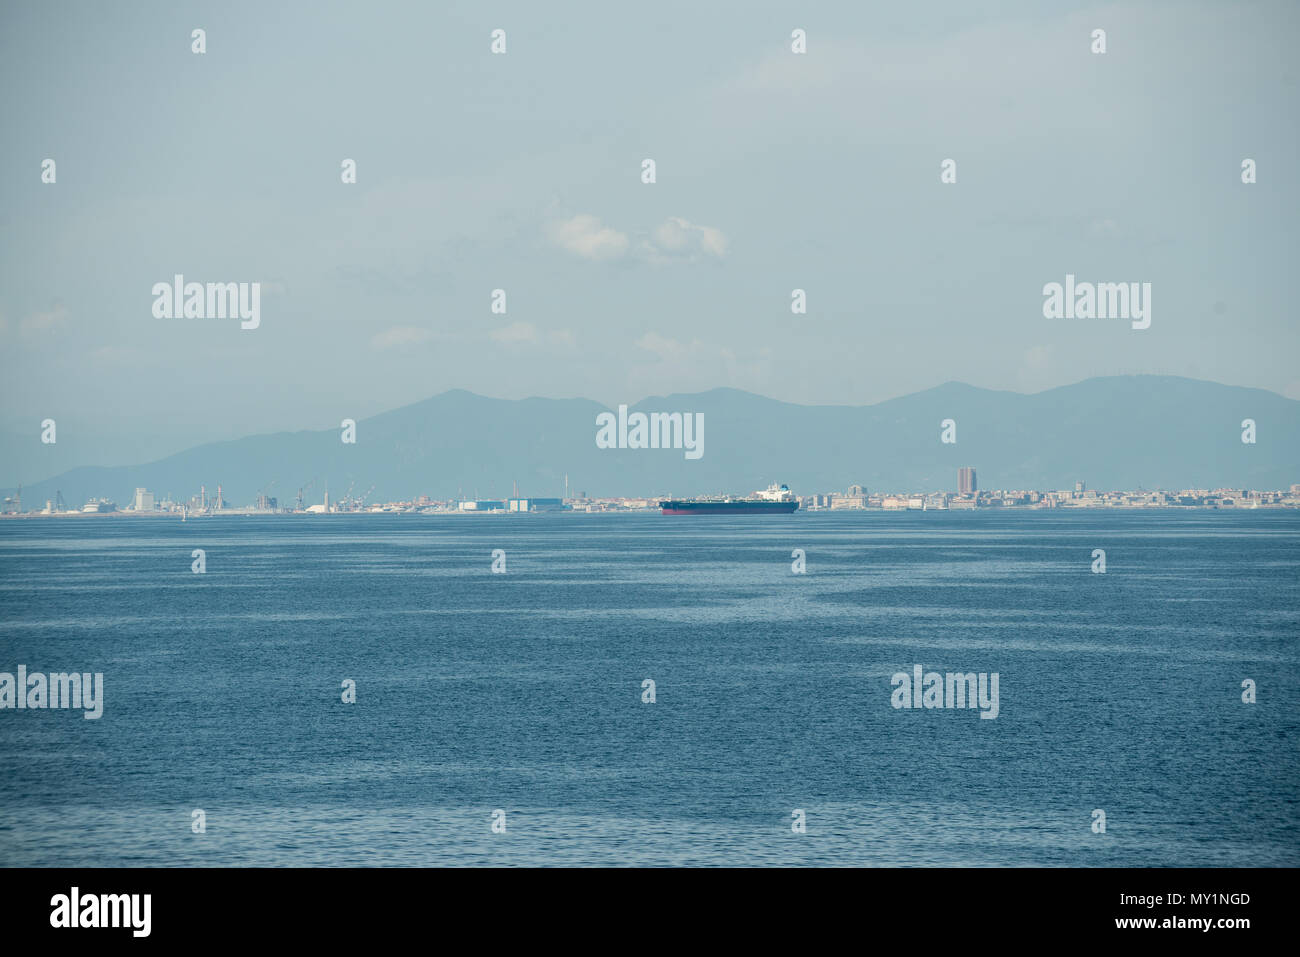 Livorno port seen from the sea, Tuscany, Italy Stock Photo